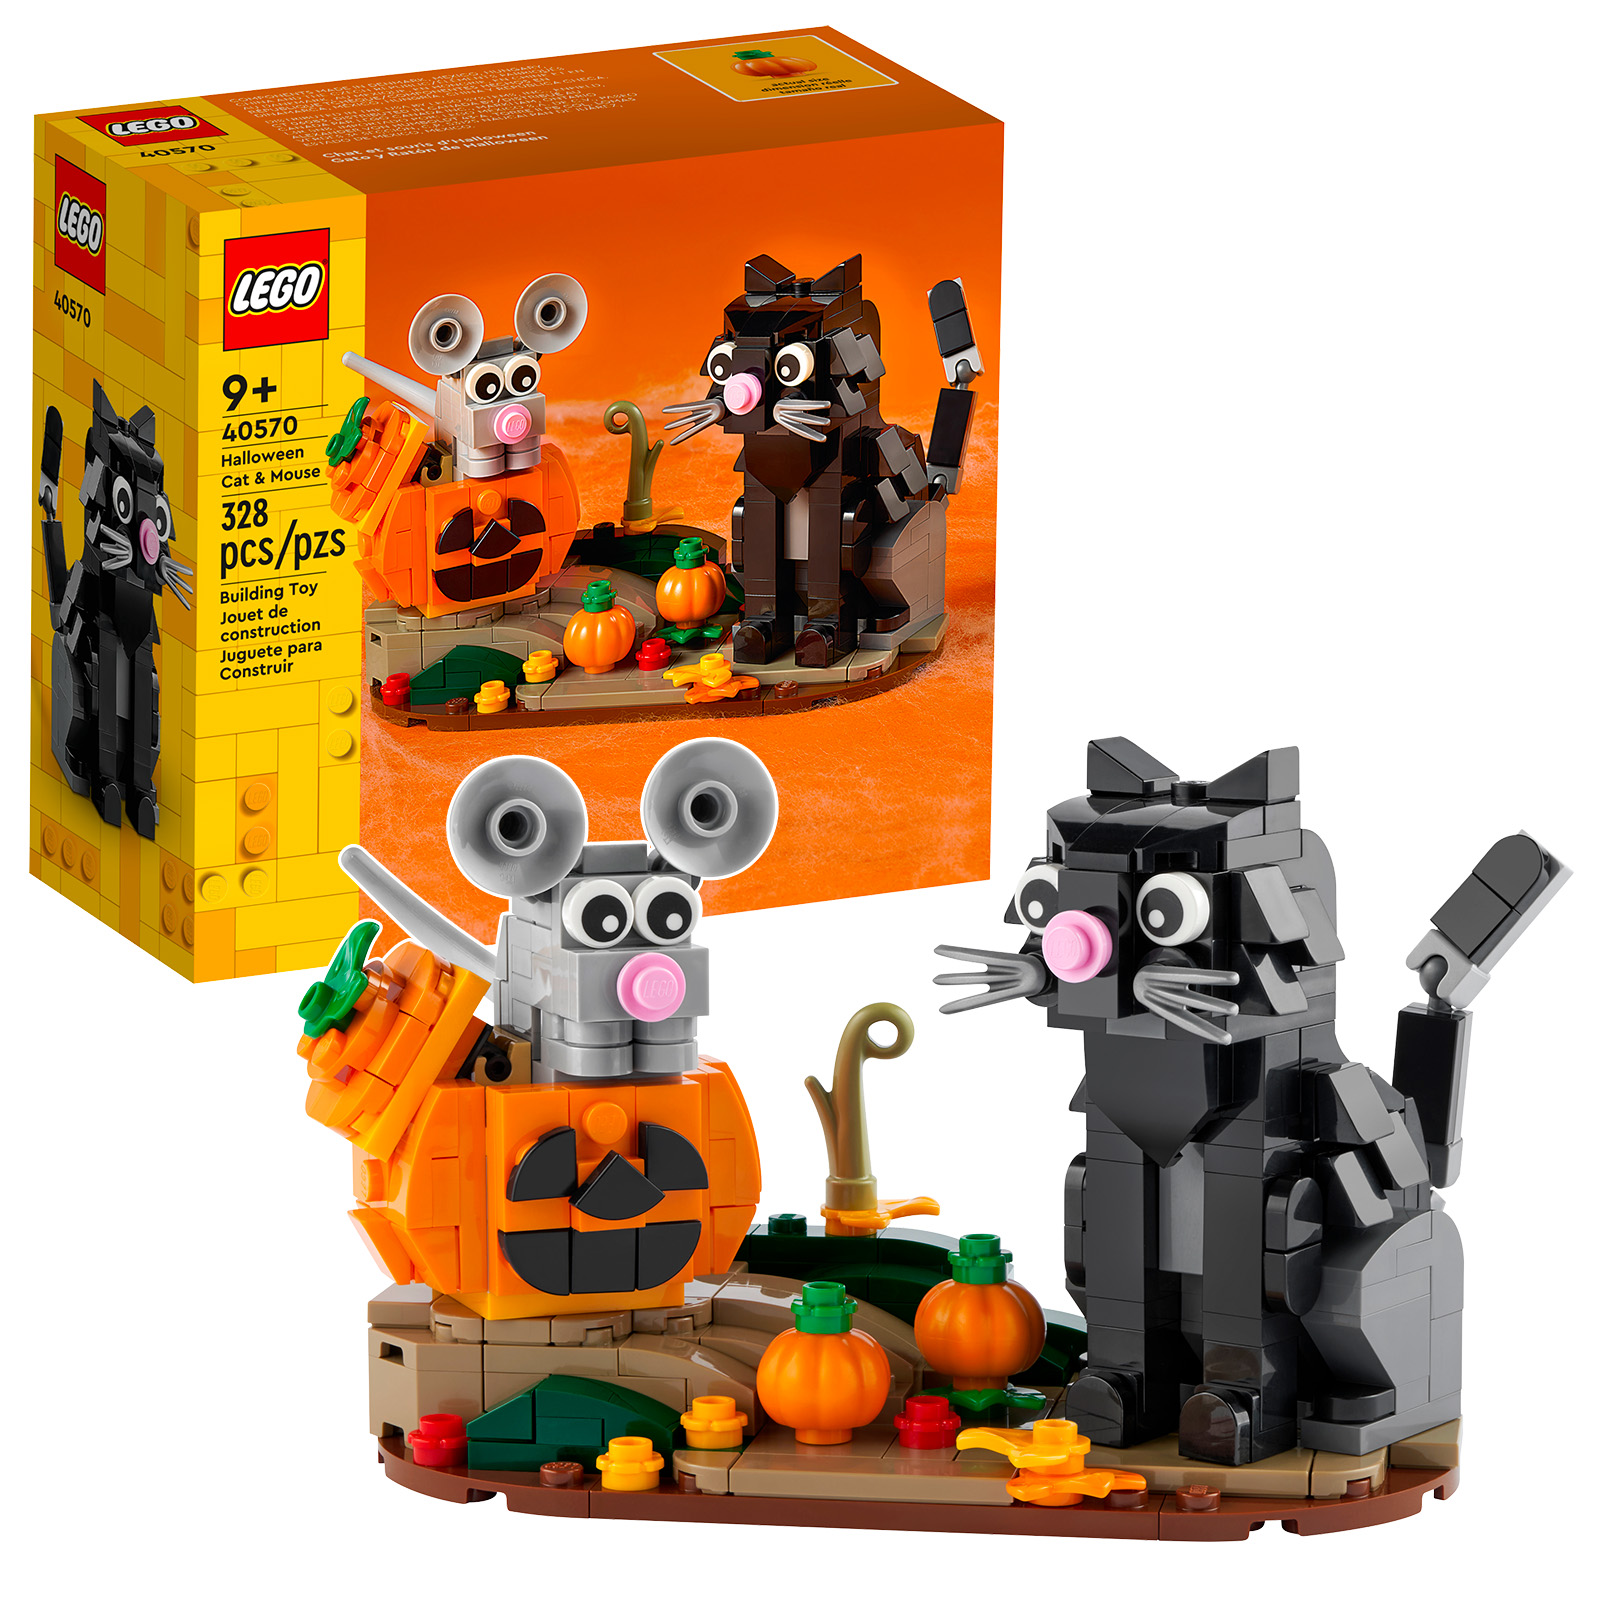 Det er nesten Halloween: 40570 Halloween Cat & Mouse-settet er online i butikken